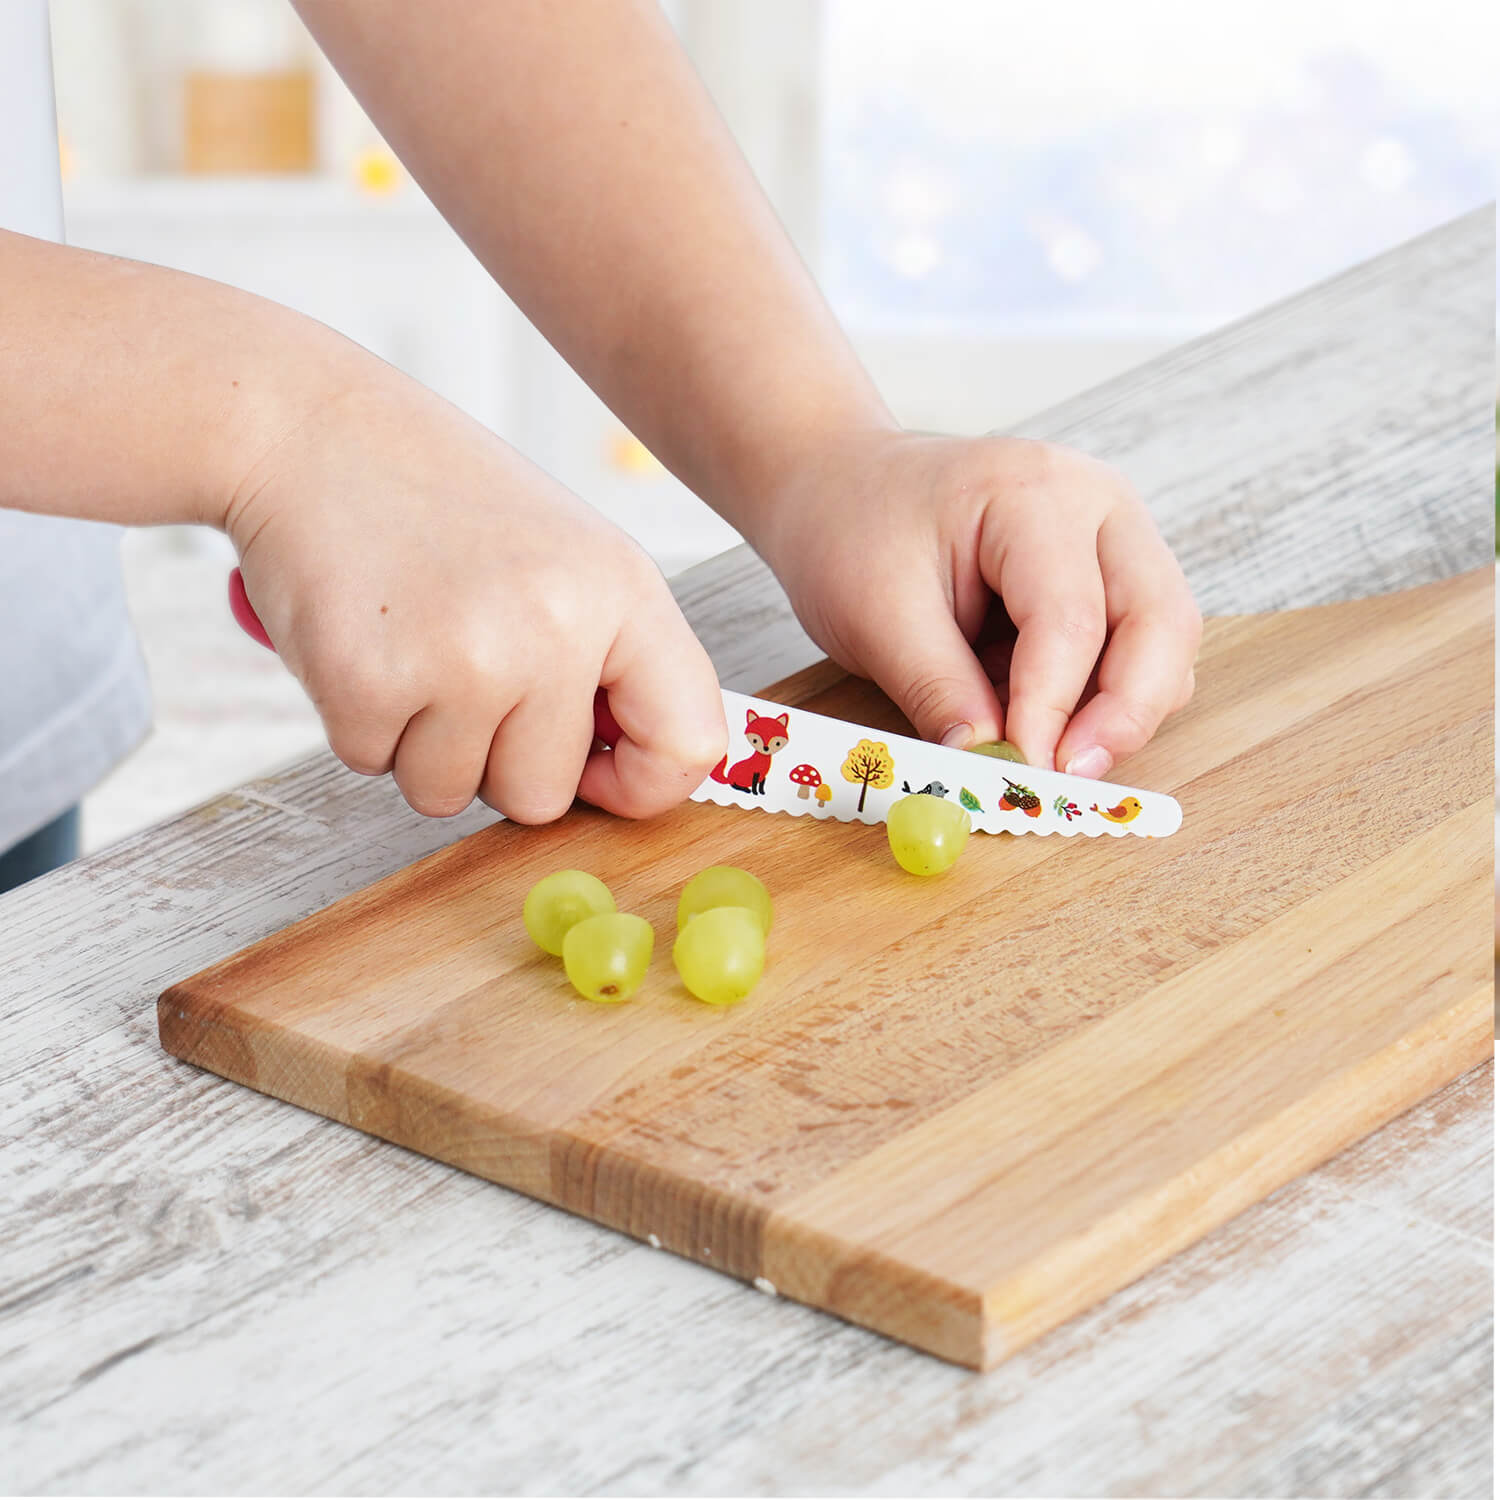 Kid-Safe Kitchen Knife Set, Kids Cooking Knife